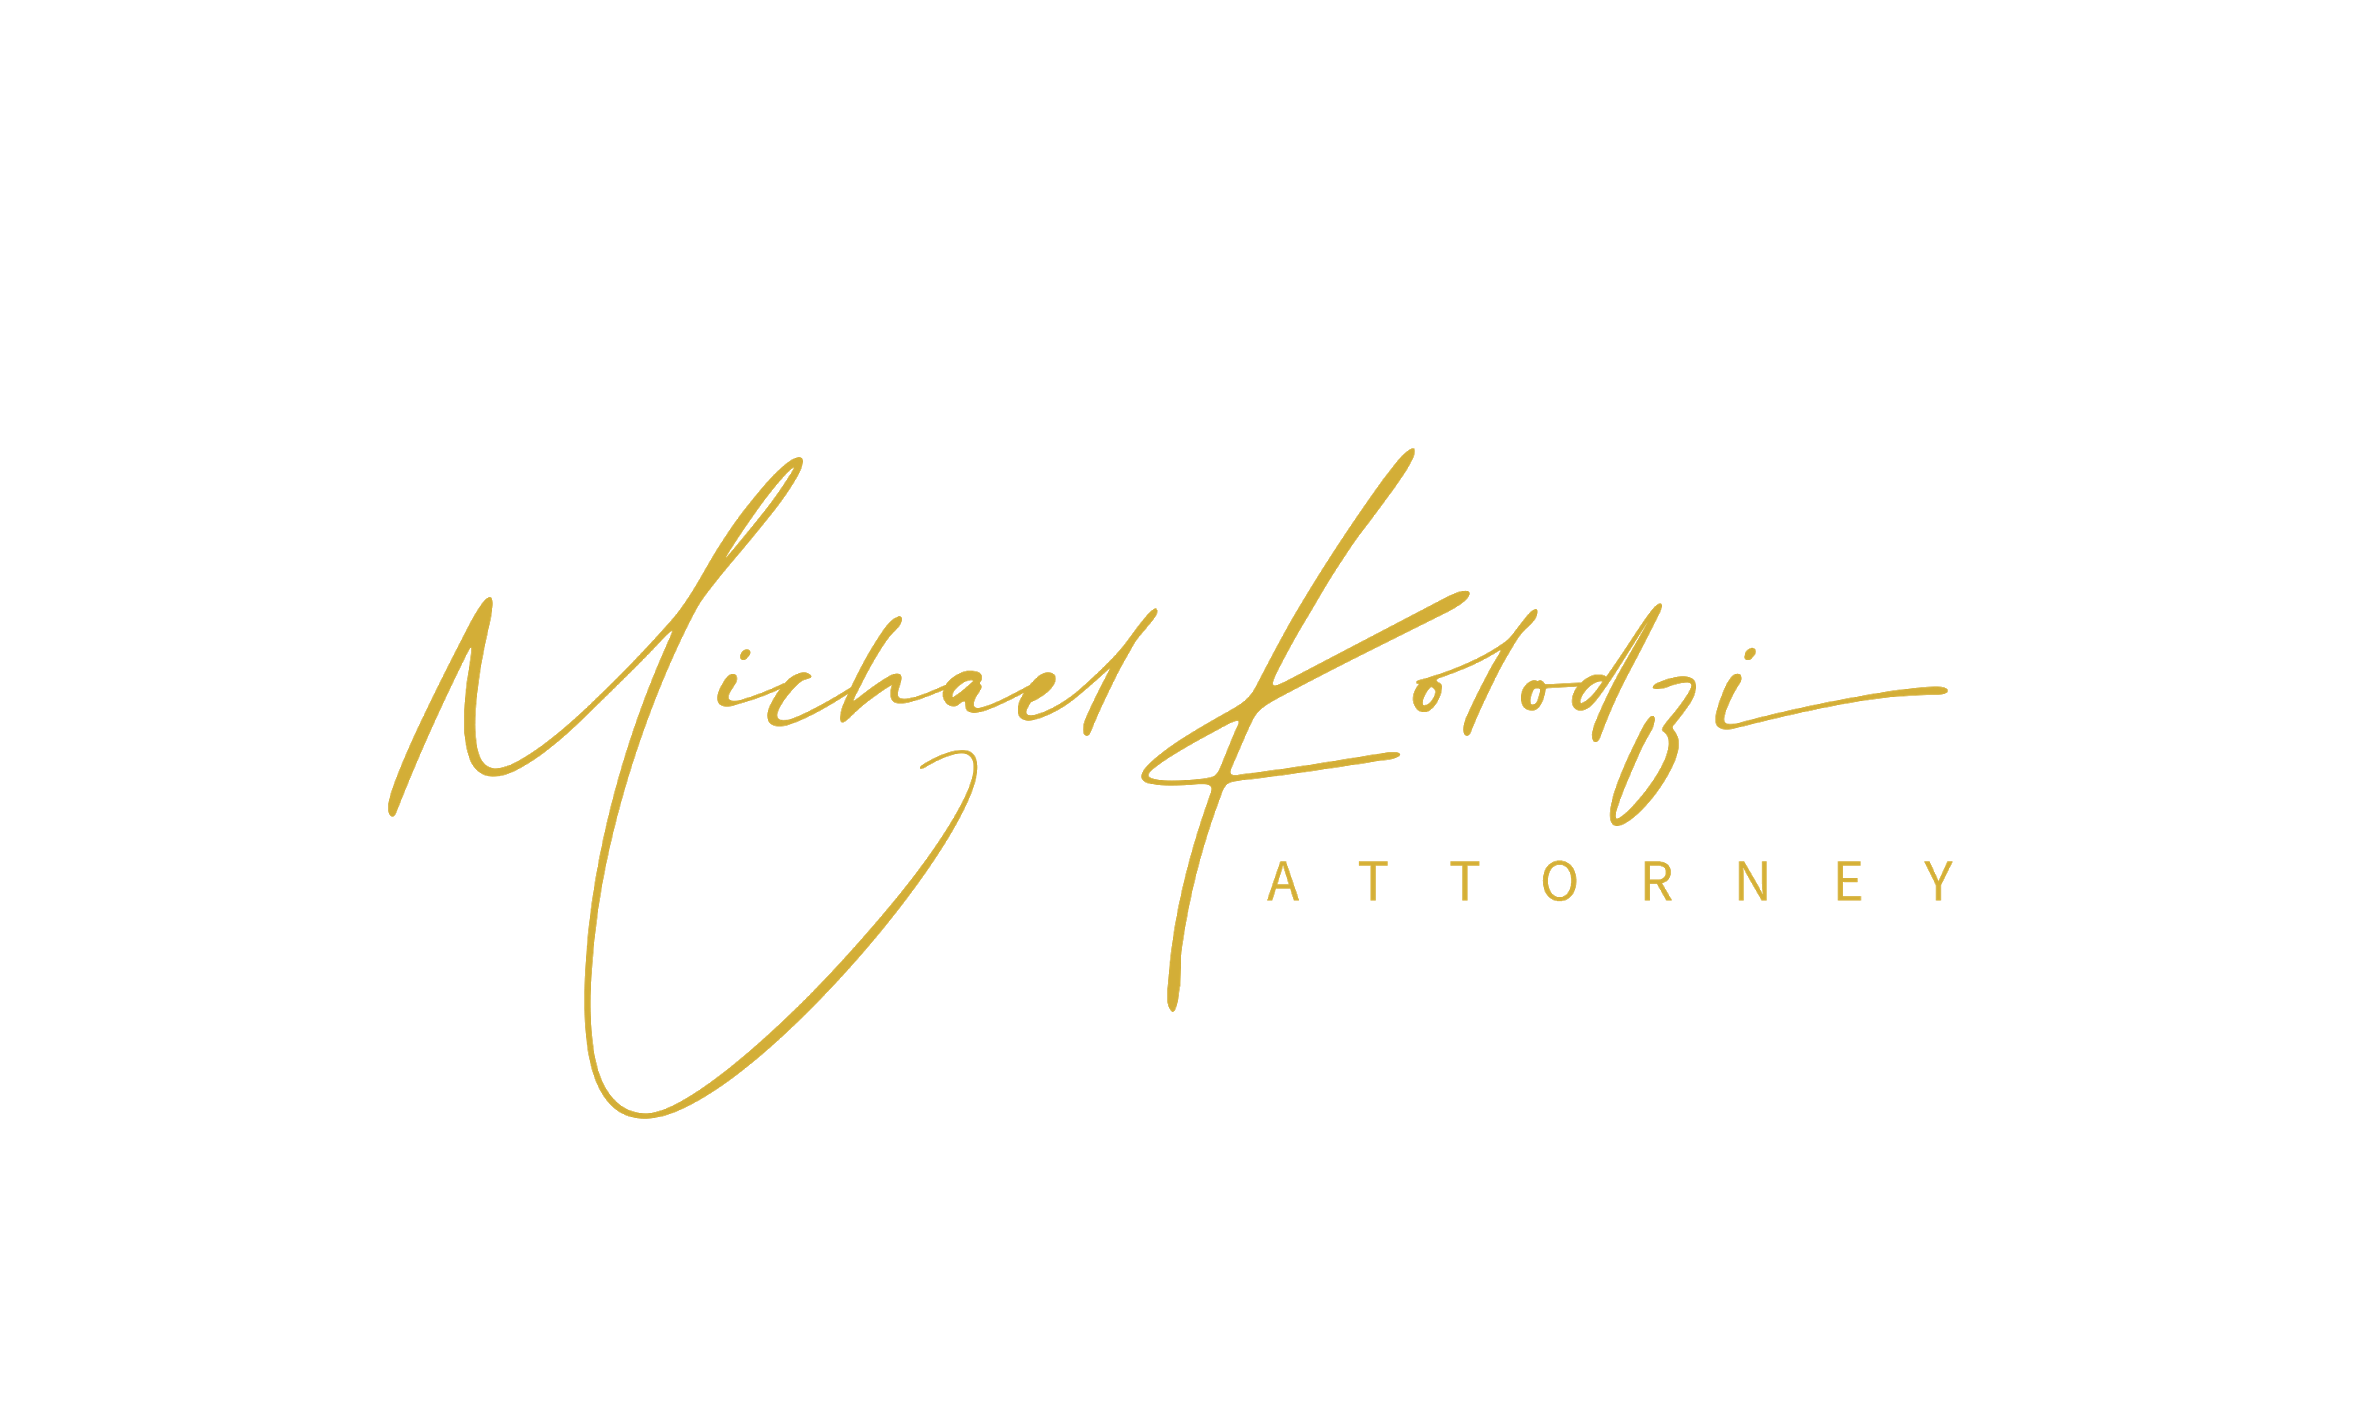 Michael D. Kolodzi Attorney at Law MDK Firm